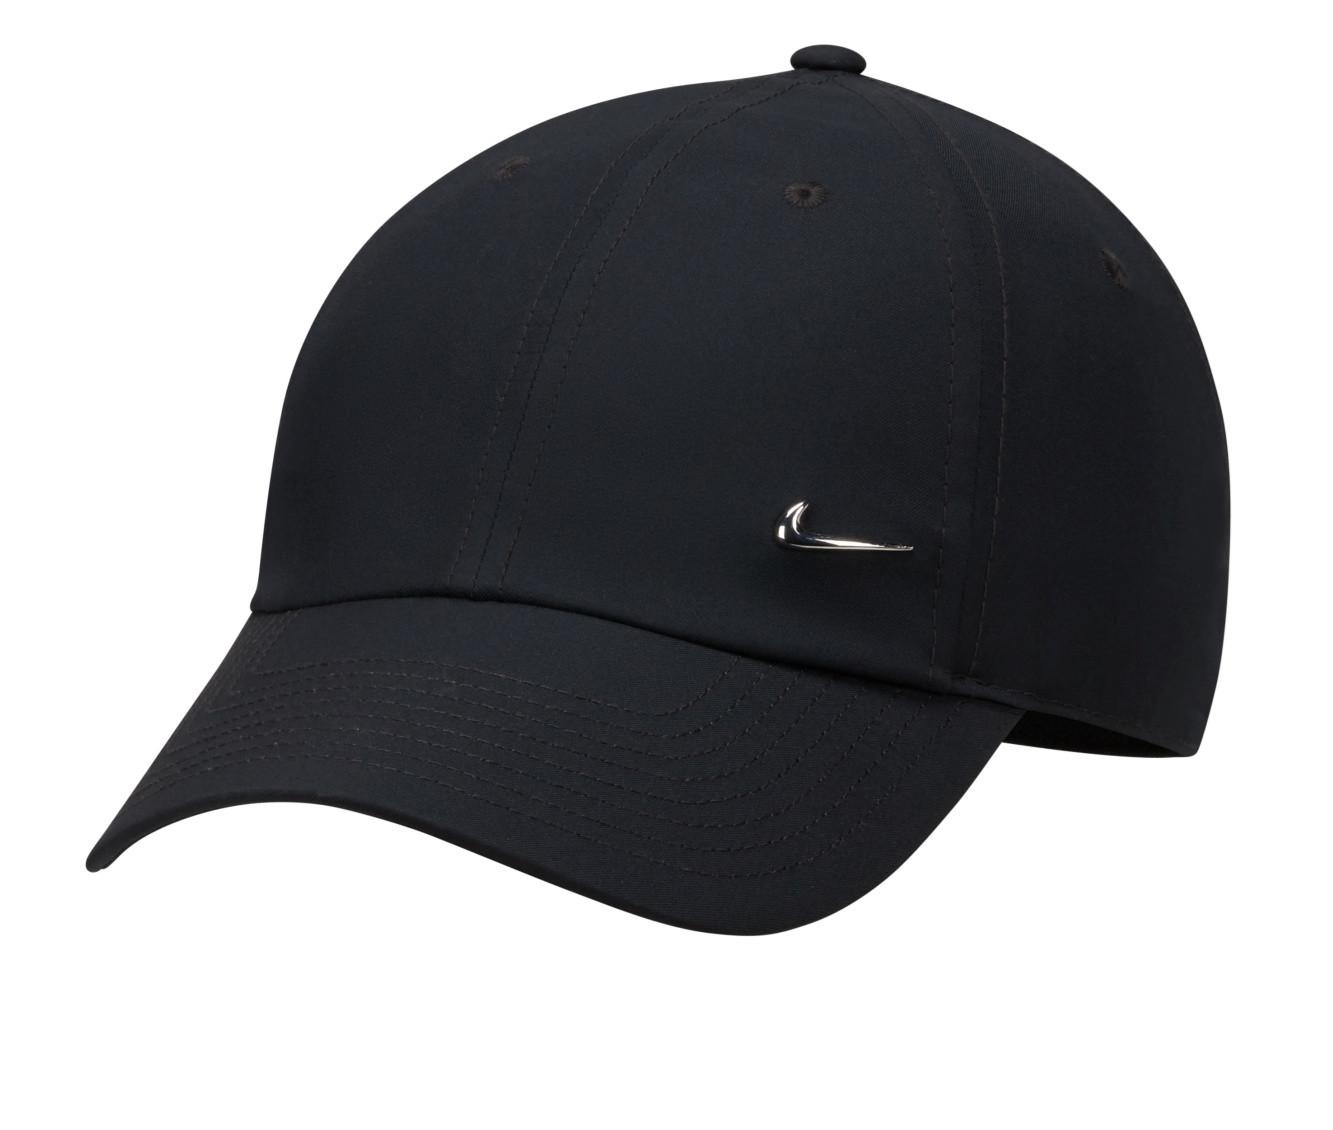 Nike Adult Unisex Metallic Swoosh Cap